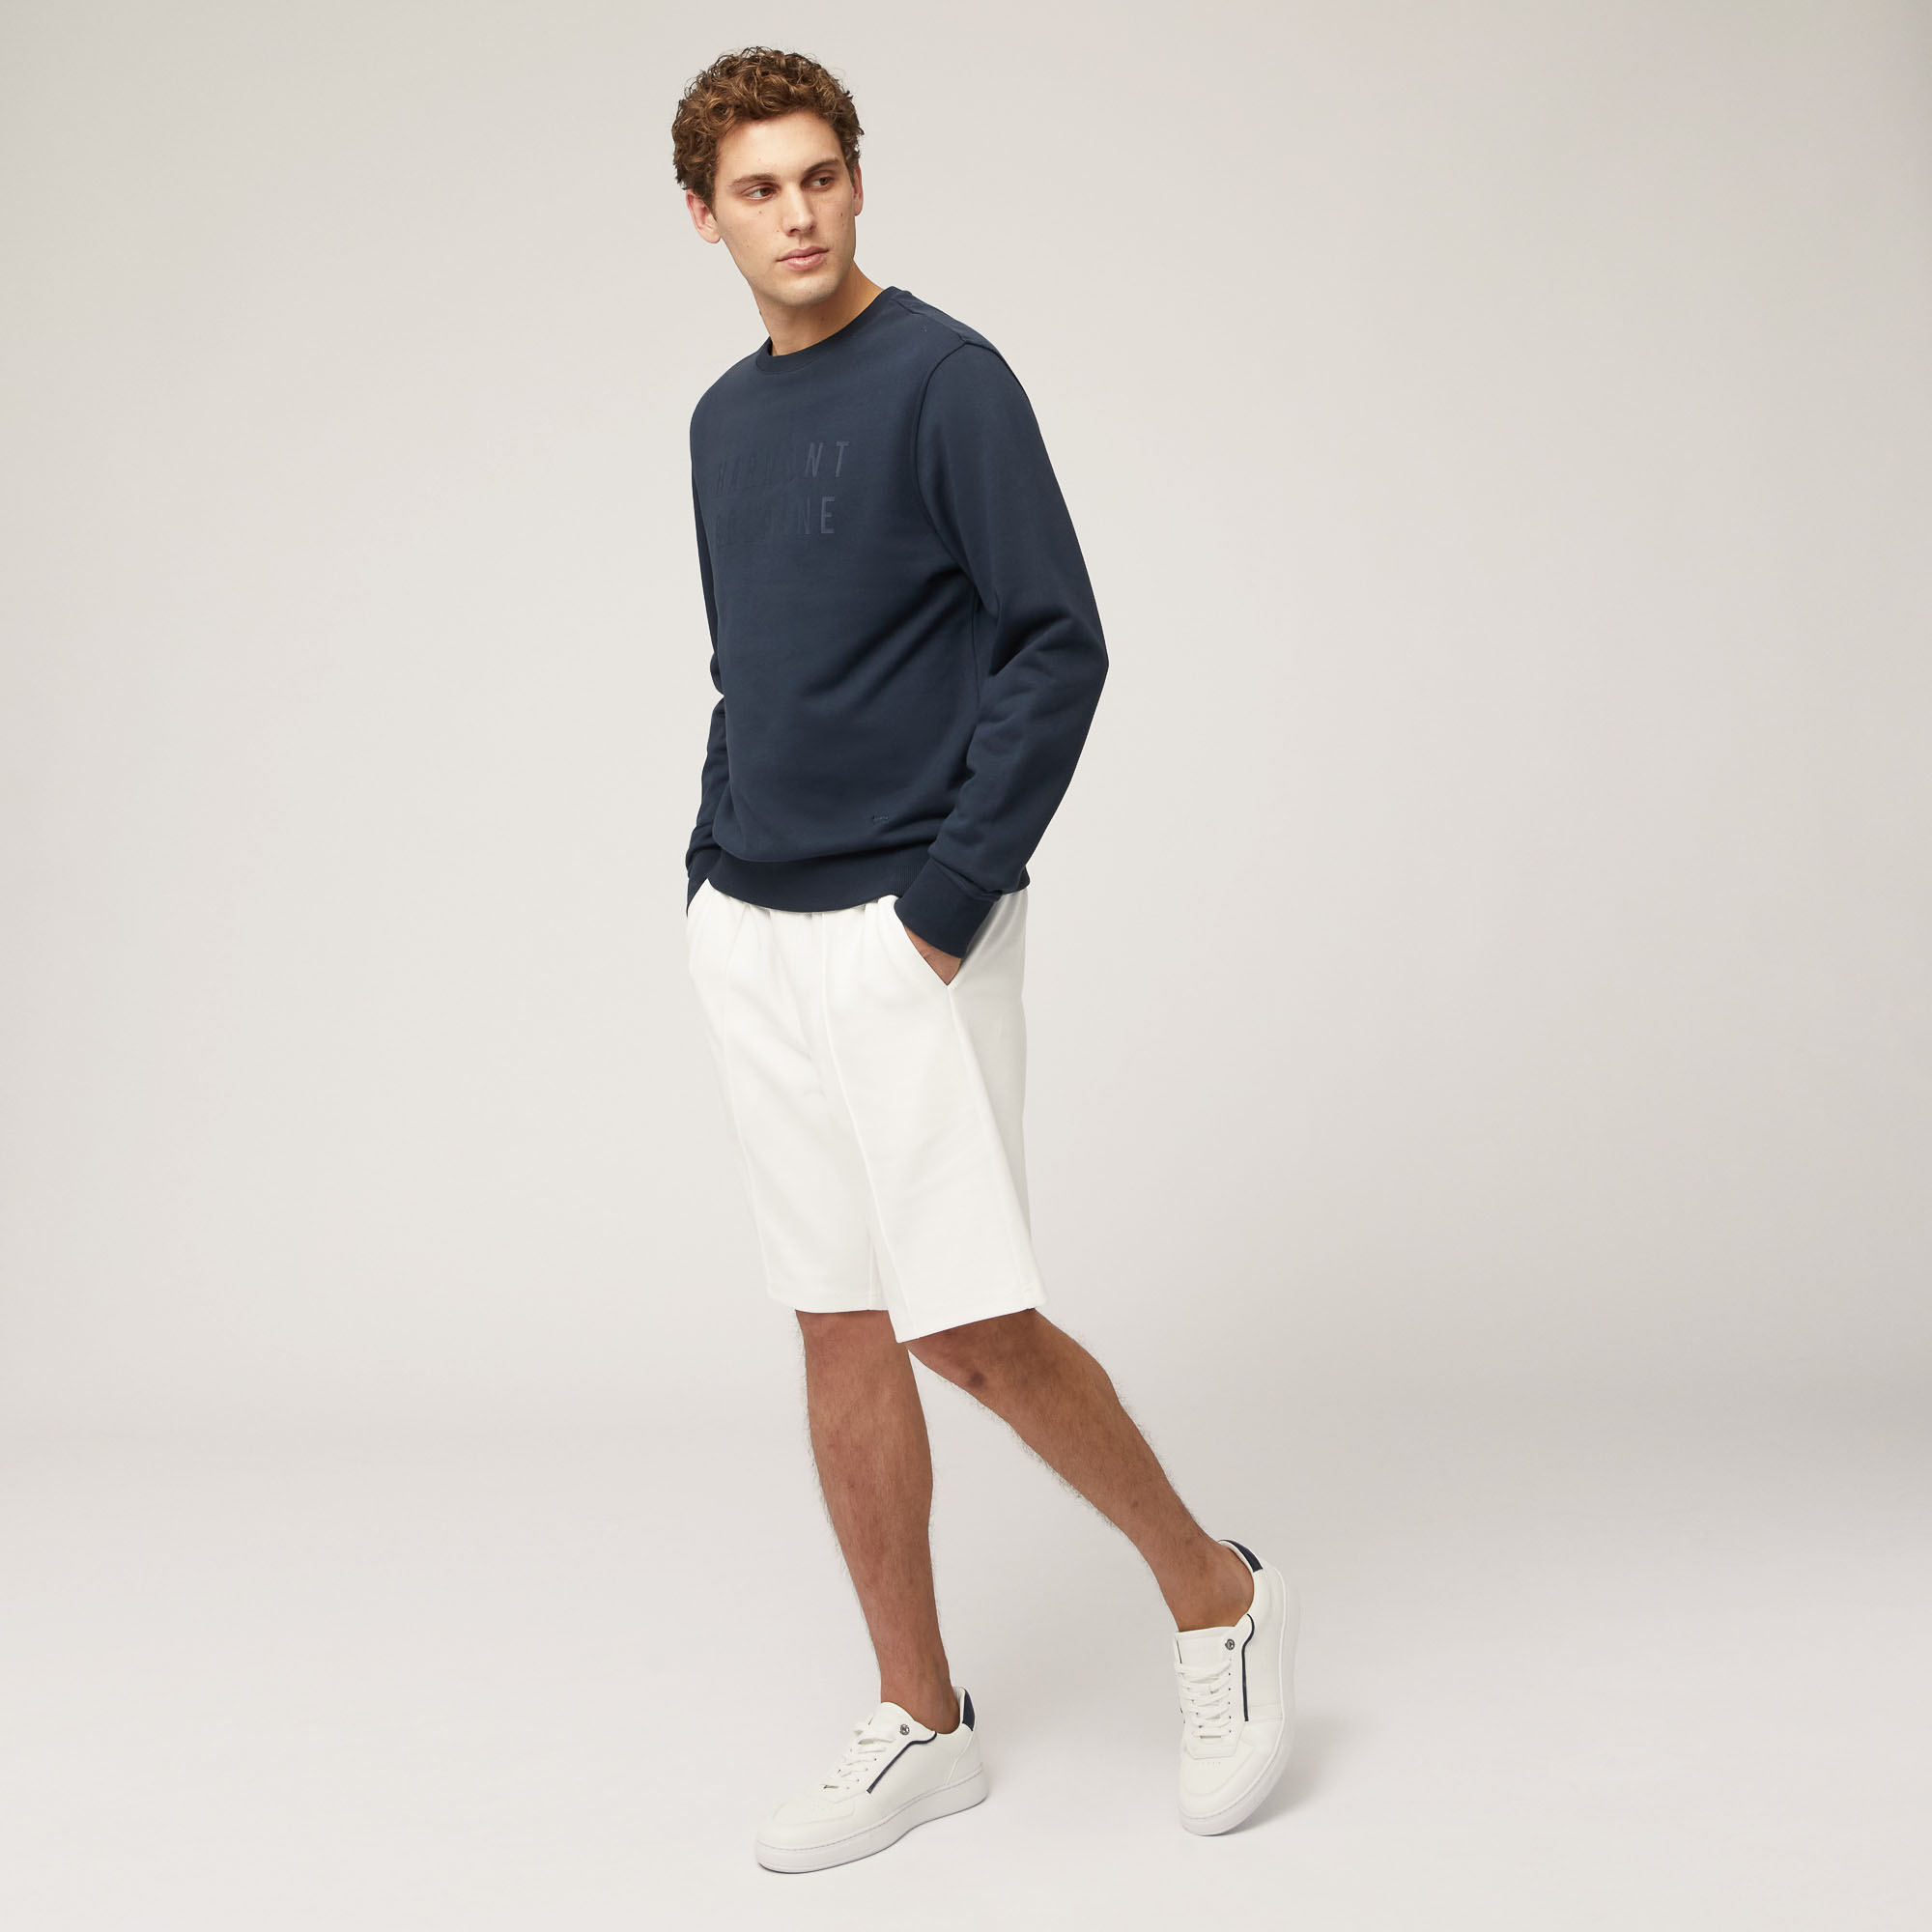 Shorts aus Stretch-Baumwolle mit Tasche hinten, Weiß, large image number 3